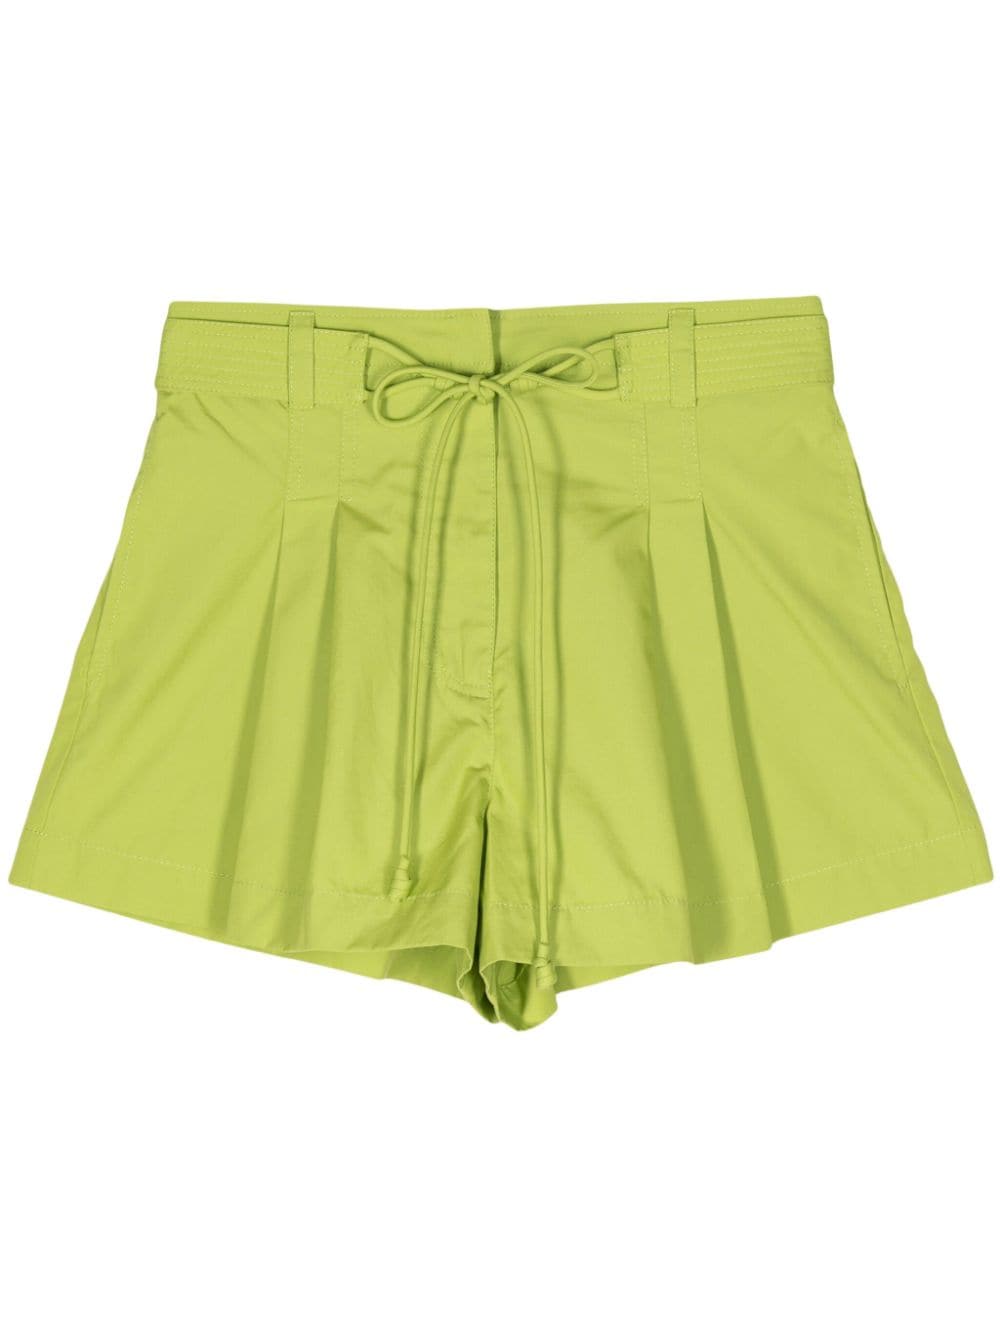 Ulla Johnson Drawstring Cotton Shorts In Green